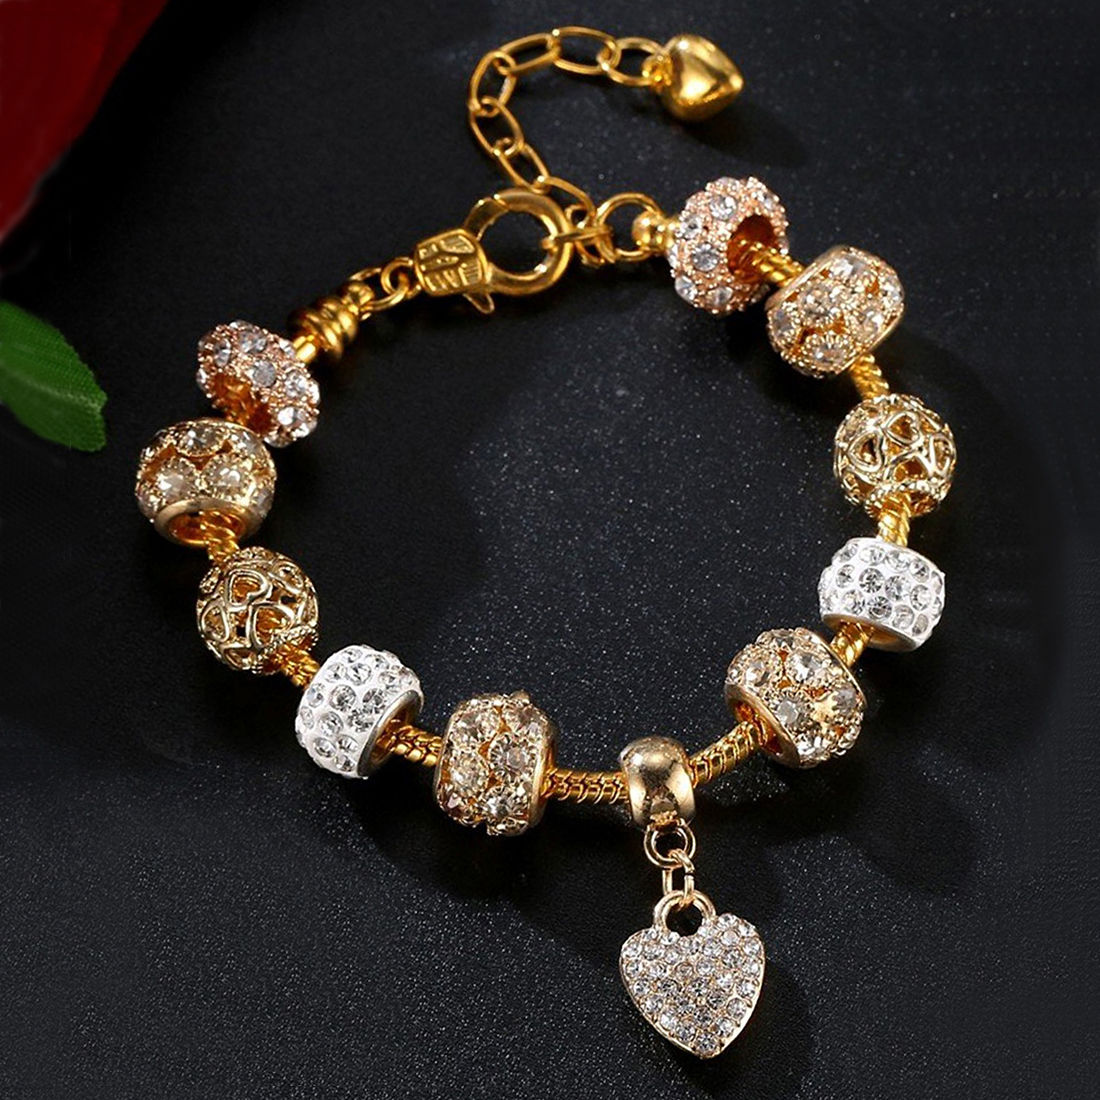 Silver Pandora Bracelet For Woman, 55 Grams, Size: Standard